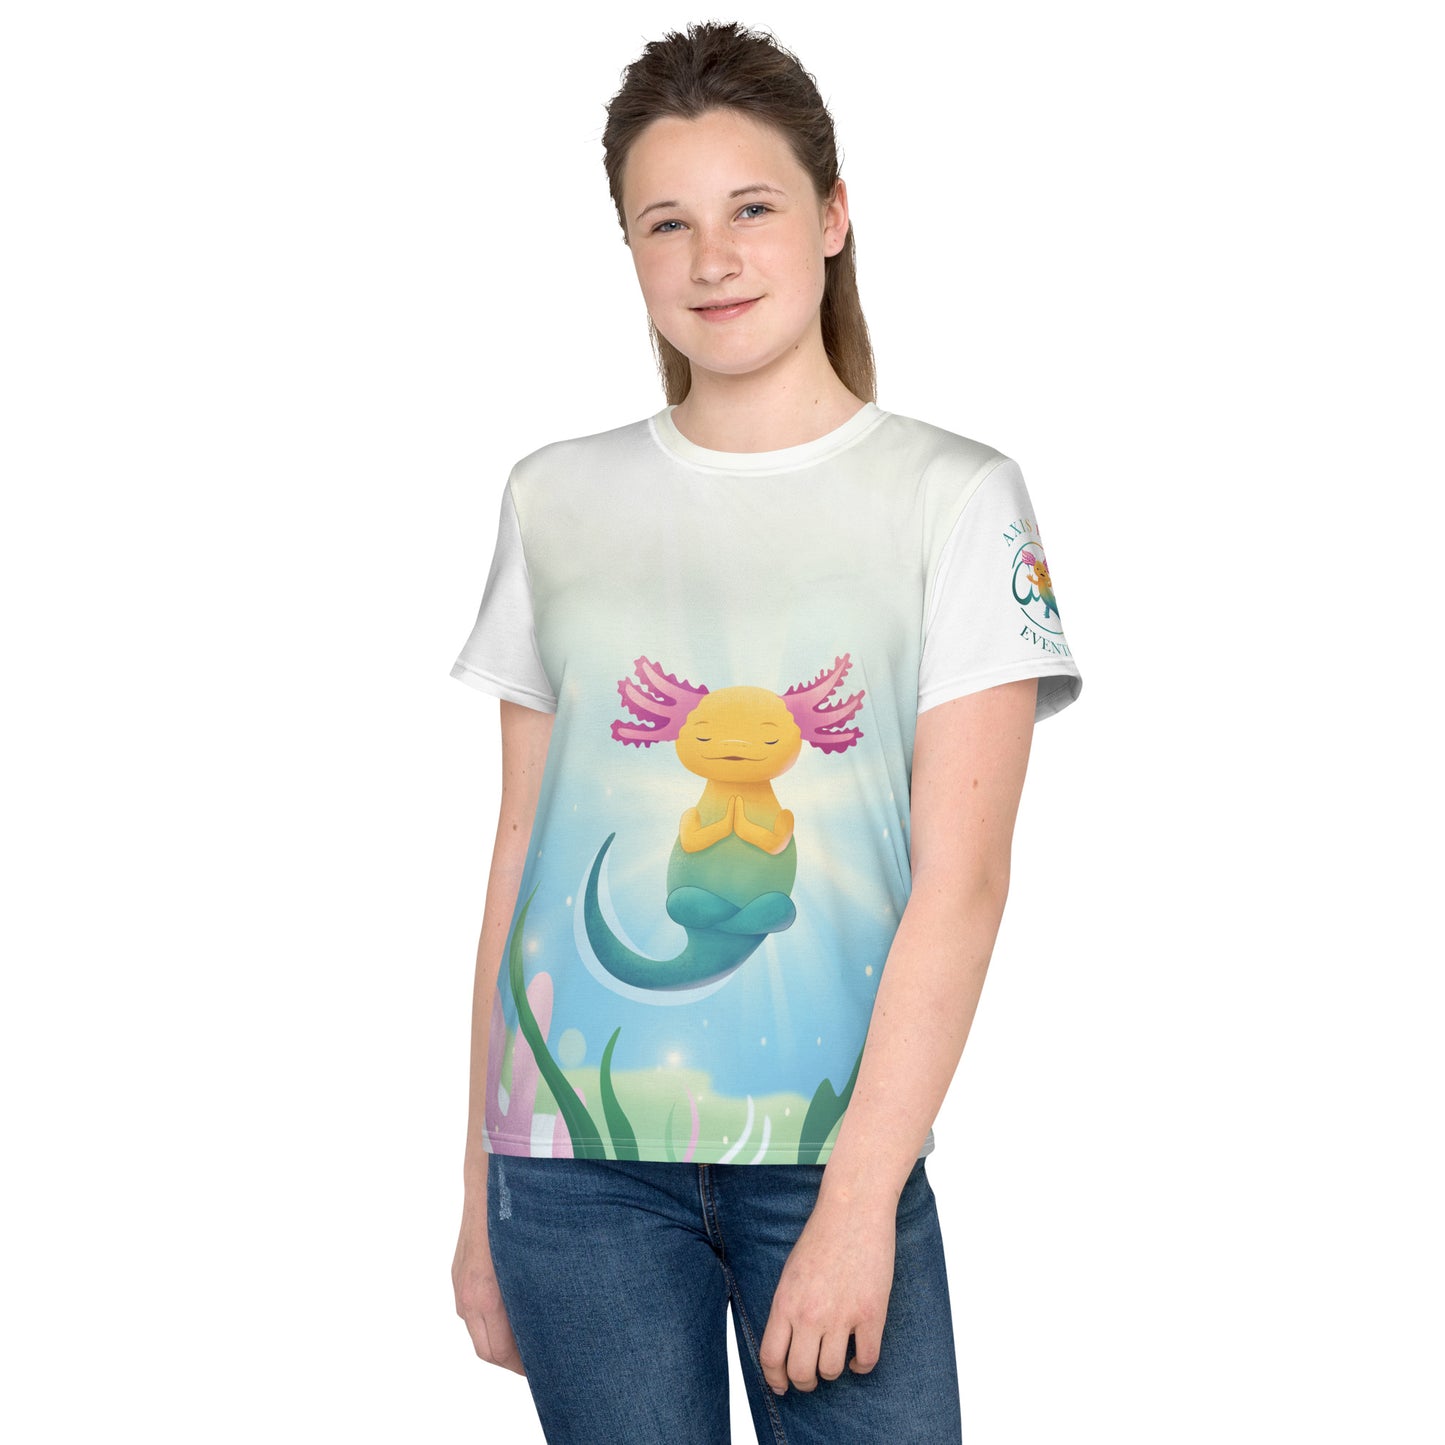 "Axis blir lugn" T-shirt för barn/ungdom 8-18år, med helt tryck på framsidan samt rundad hals, vit rygg och ärm.